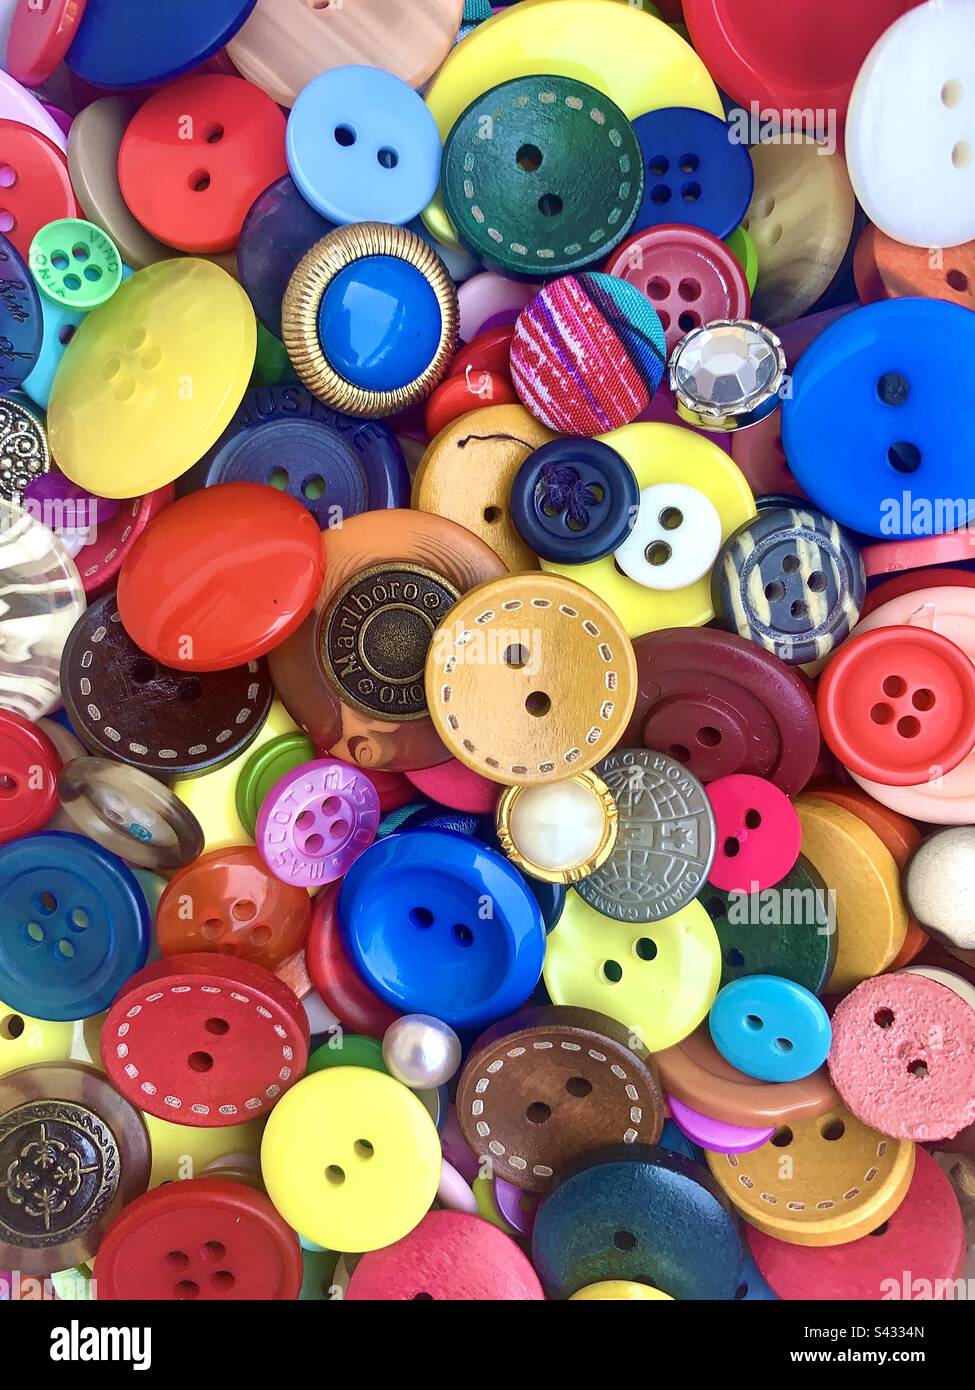 Superbe fond de bouton. Une sélection colorée et richement texturée de boutons multicolores remplit tout le cadre. Banque D'Images